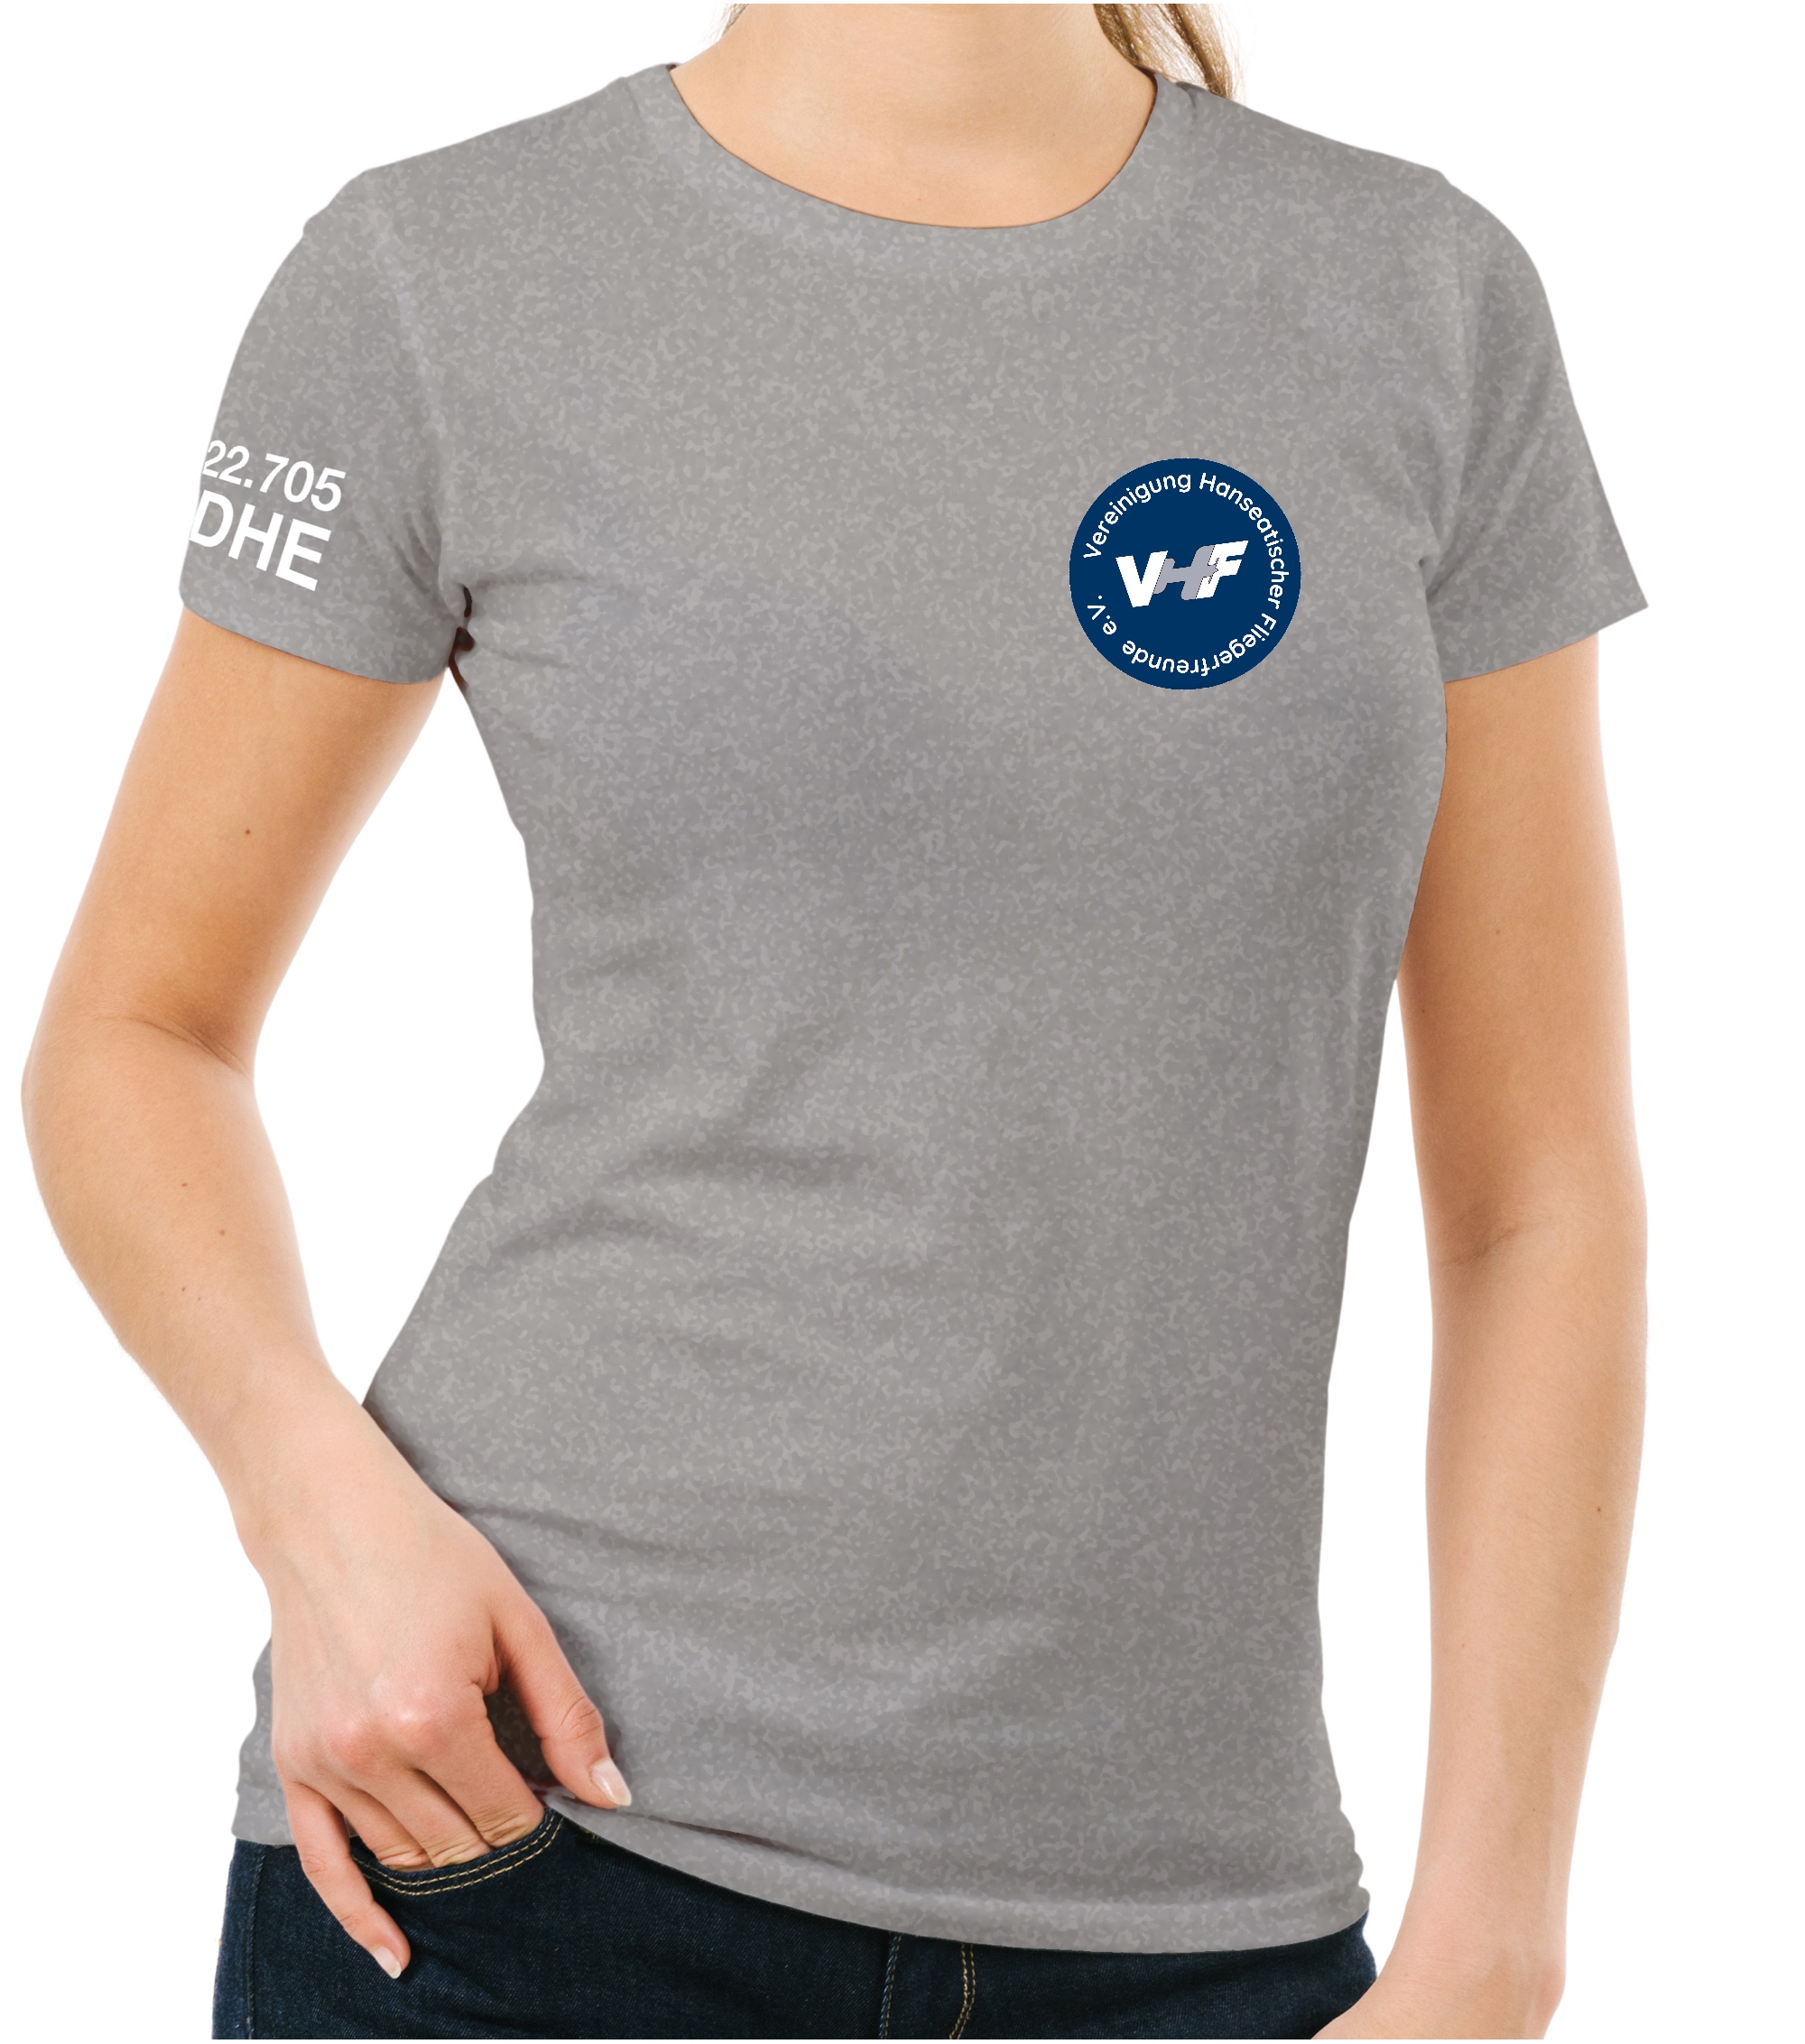 Damen T-Shirt VHF e.V.